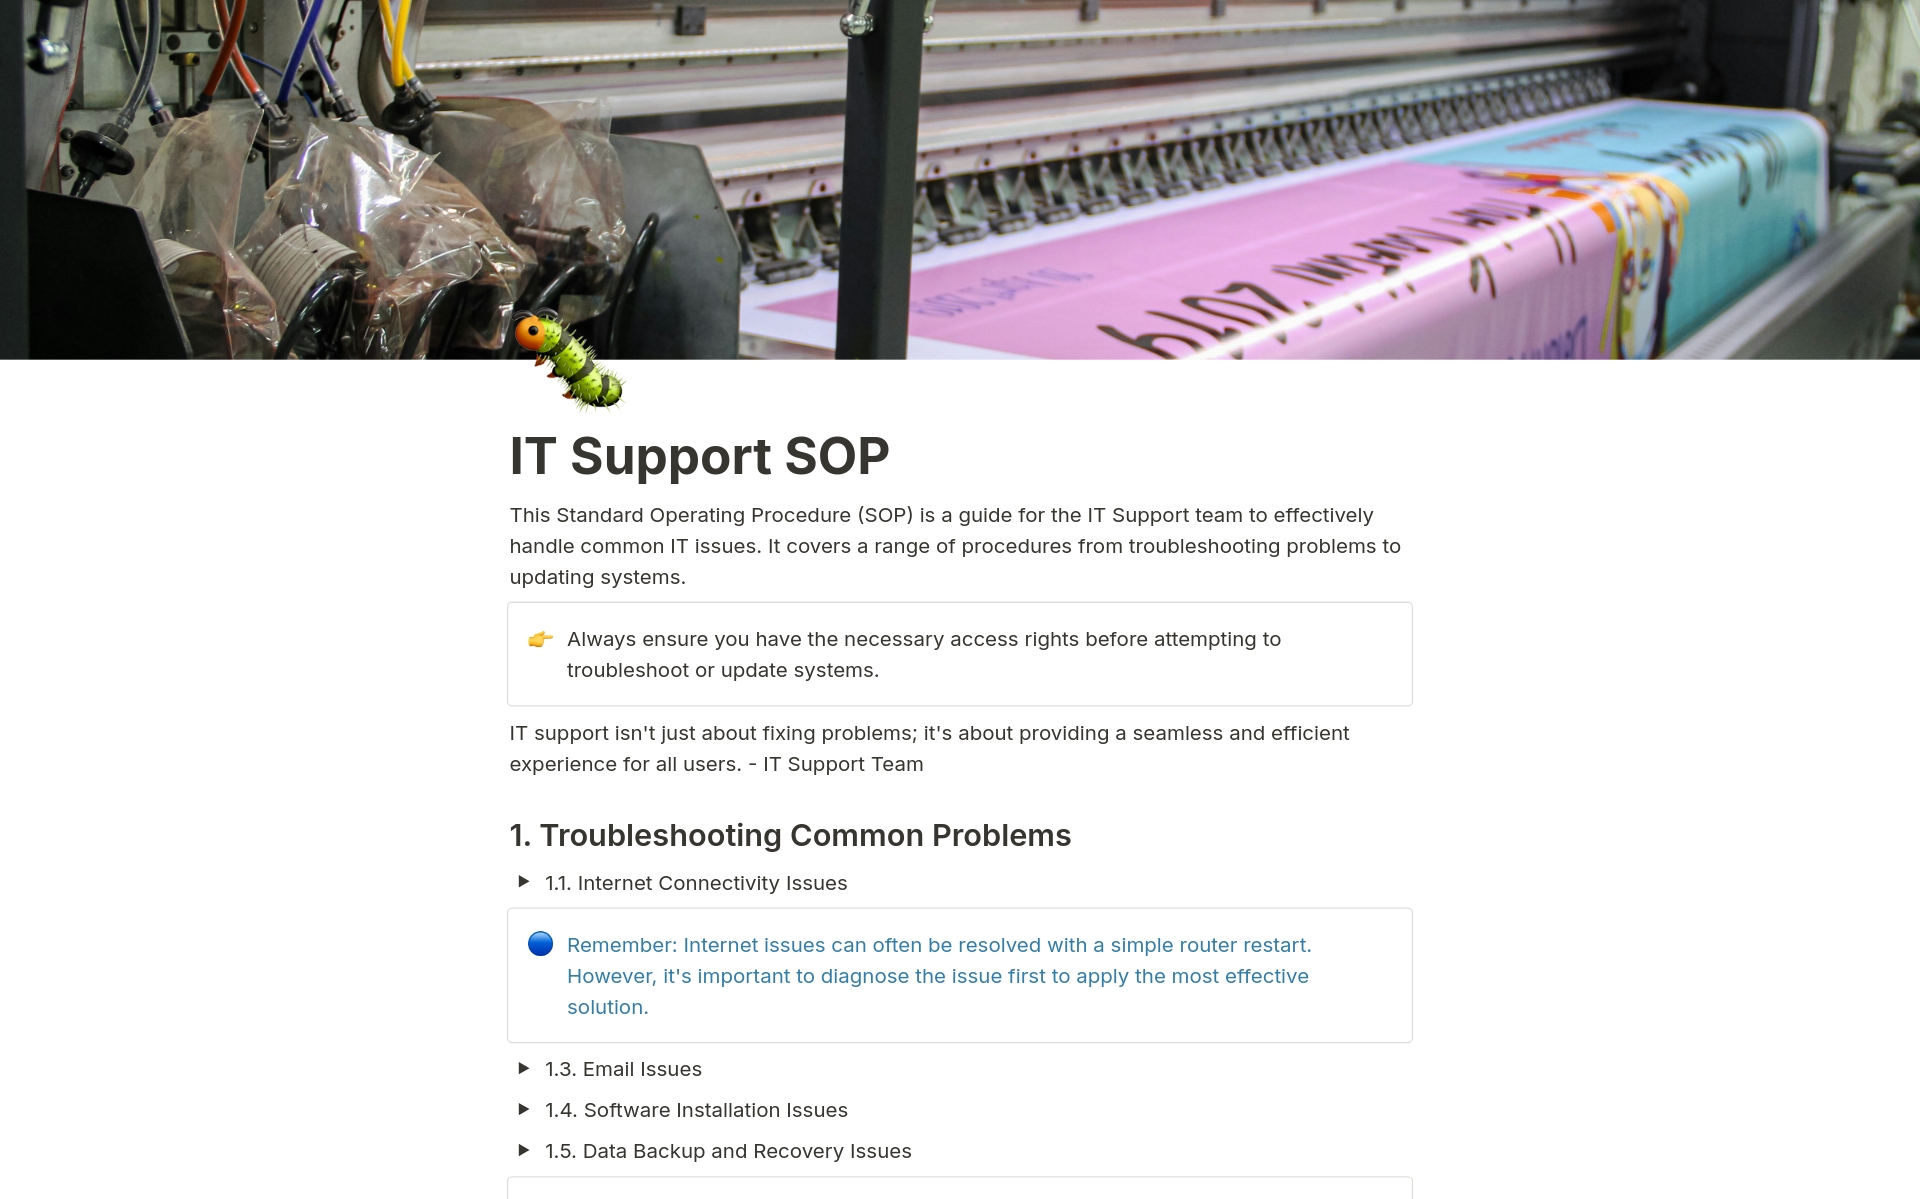 Uma prévia do modelo para IT Support SOP